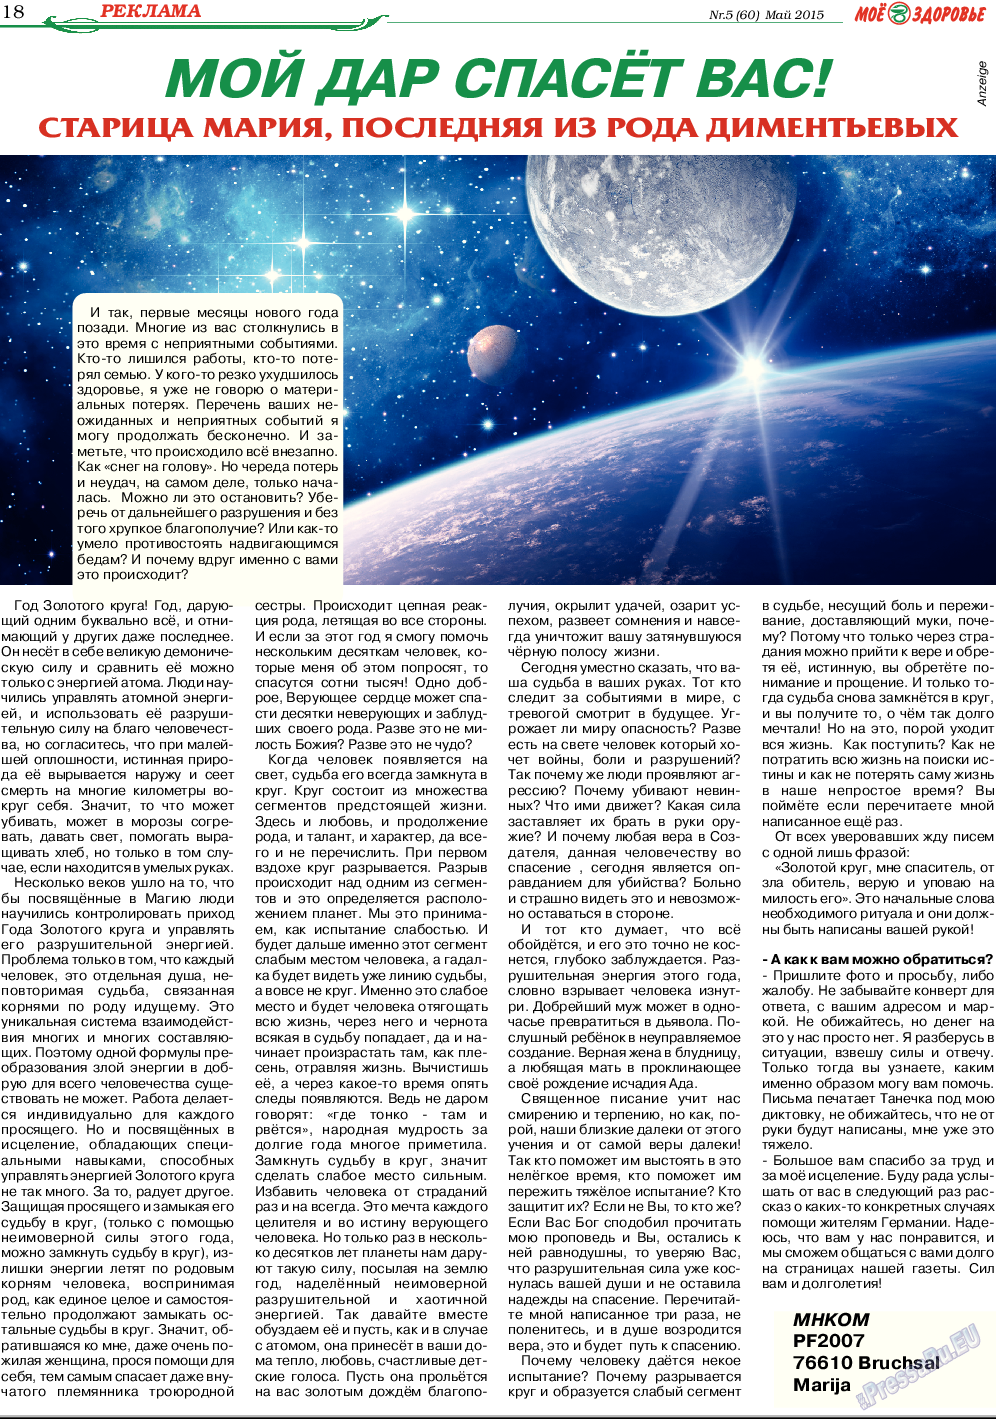 Кругозор, газета. 2015 №5 стр.18